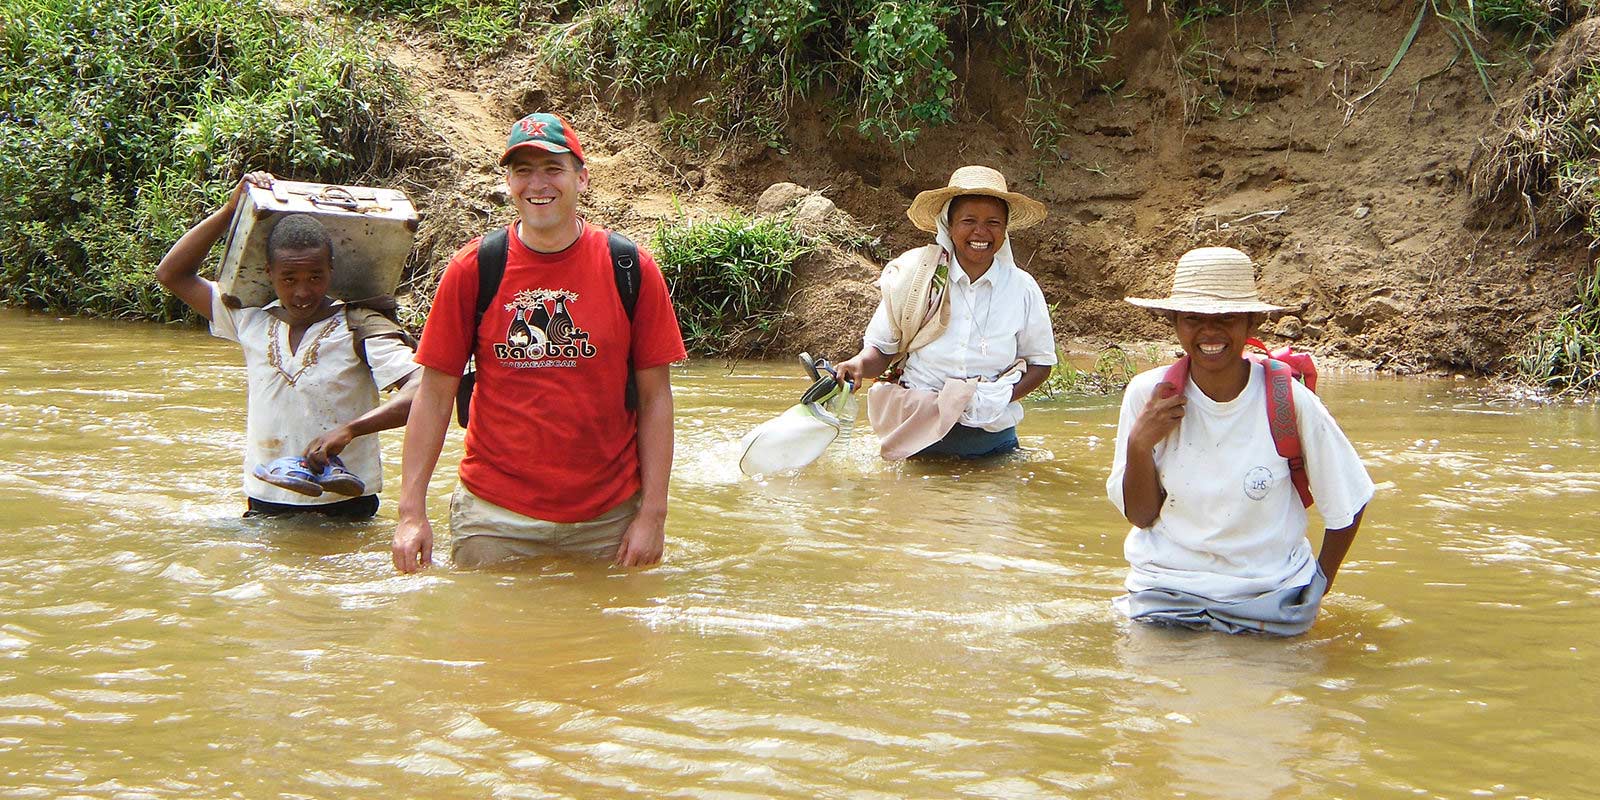 O padre Andrzej Dzida atravessa a água durante uma patrulha missionária em Madagascar.